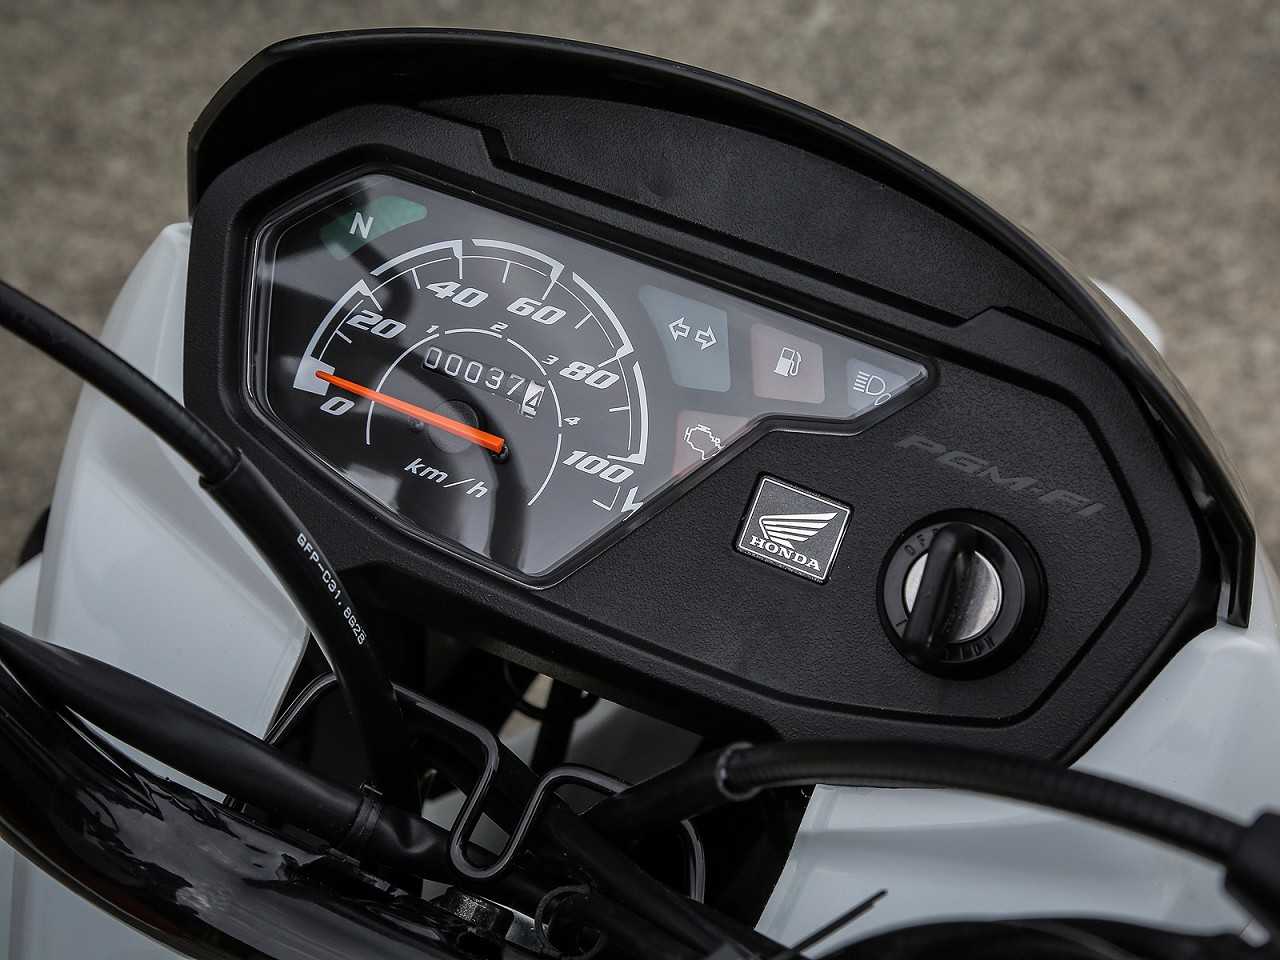 HondaPop 110i 2019 - painel